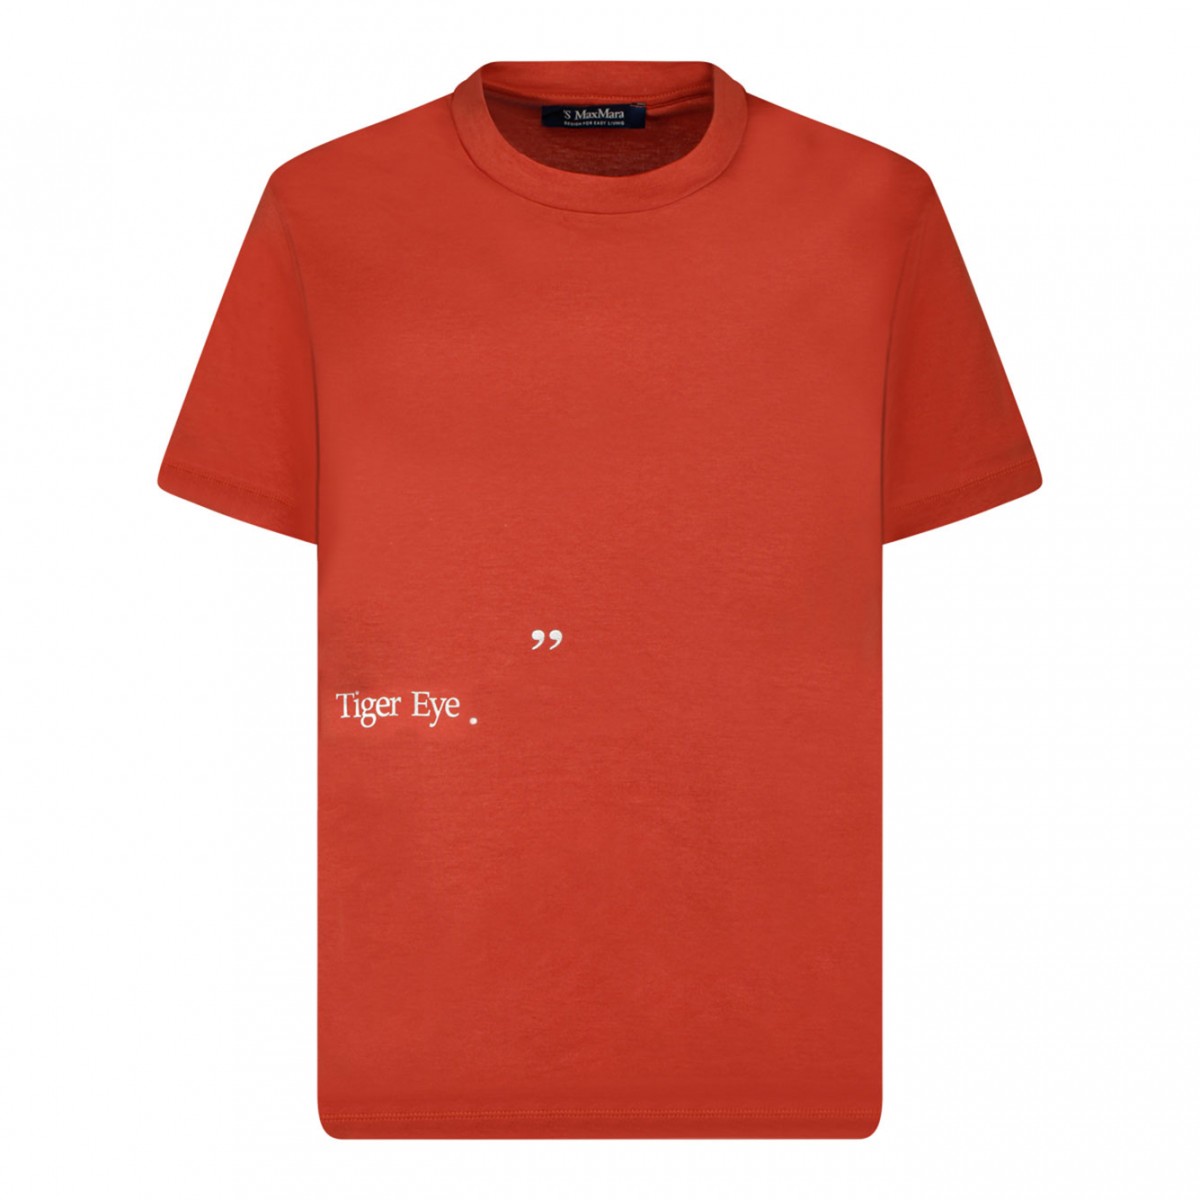 Orange Print T-Shirt